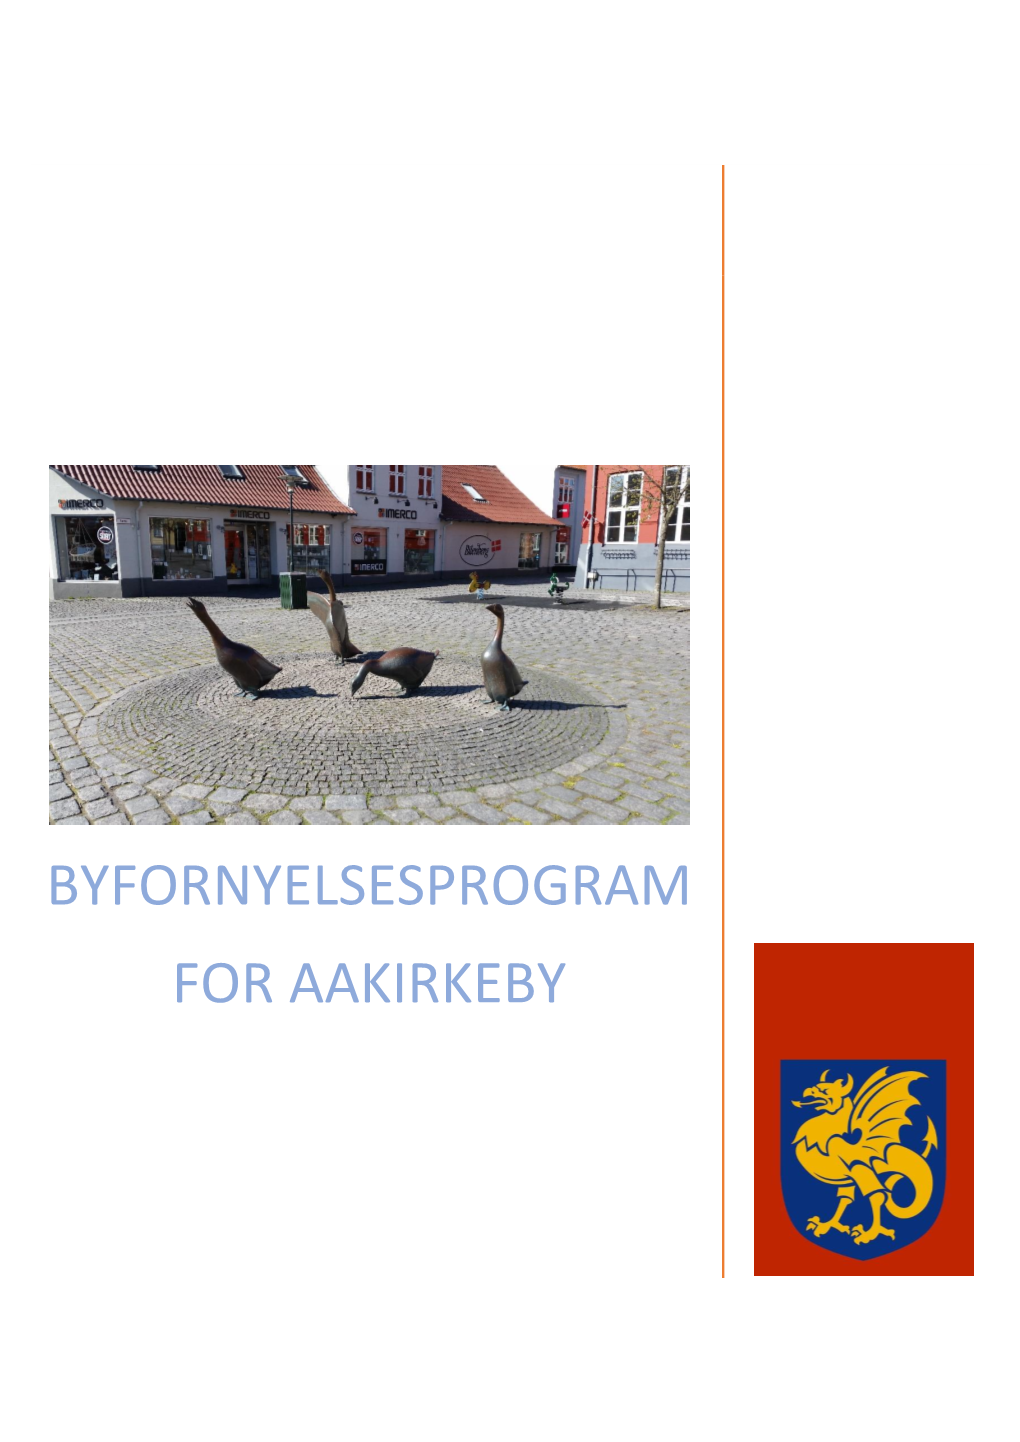 Byfornyelsesprogram for Aakirkeby Områdefornyelse